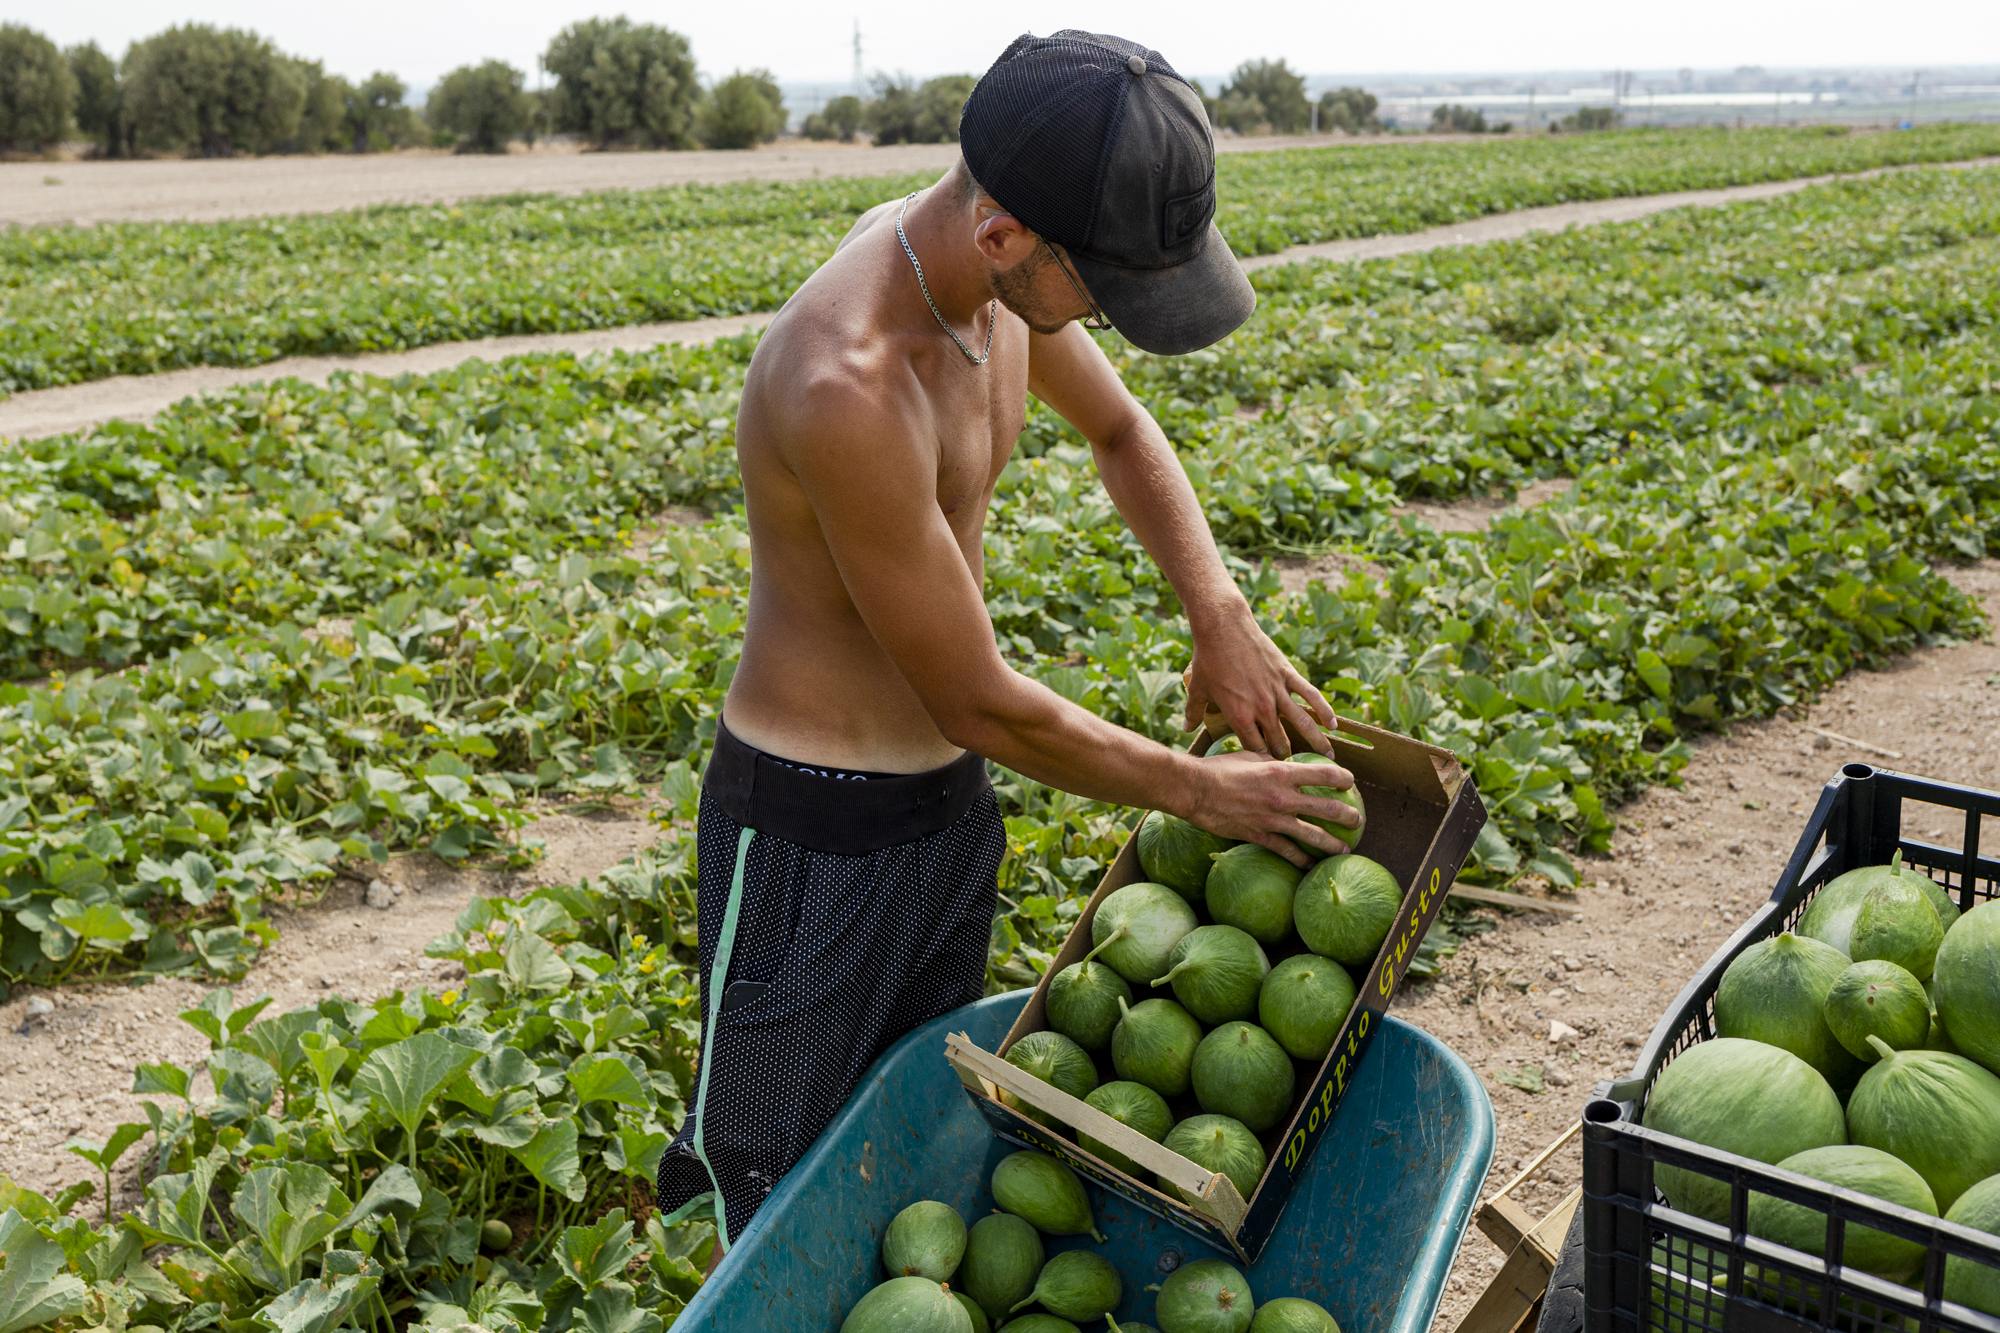  Jonge man zonder shirt aan, staat op een veld en legt watermeloenen in een krat.